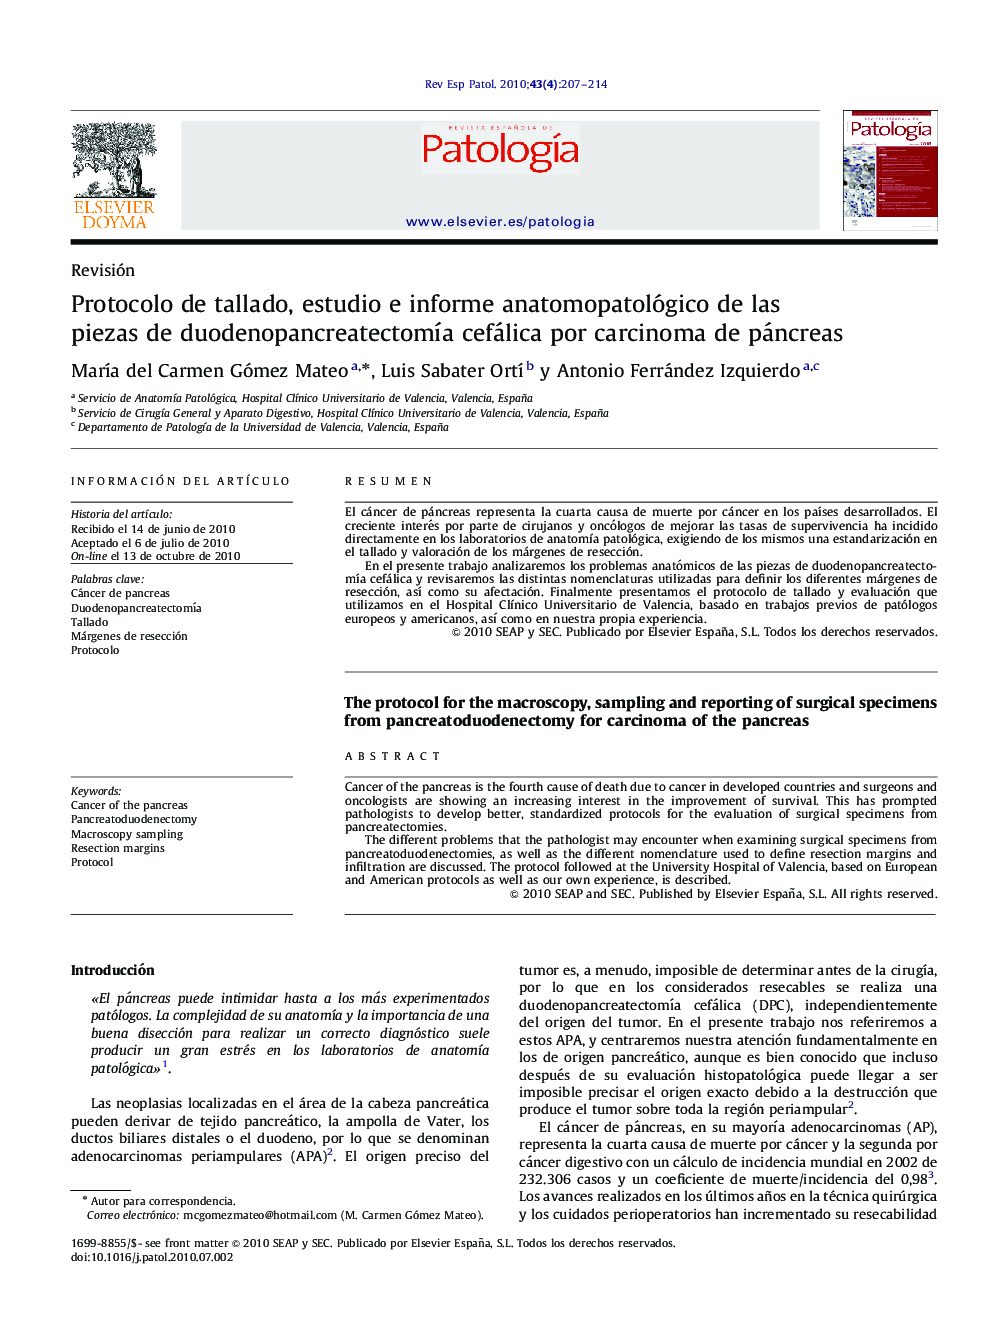 Protocolo de tallado, estudio e informe anatomopatológico de las piezas de duodenopancreatectomÃ­a cefálica por carcinoma de páncreas